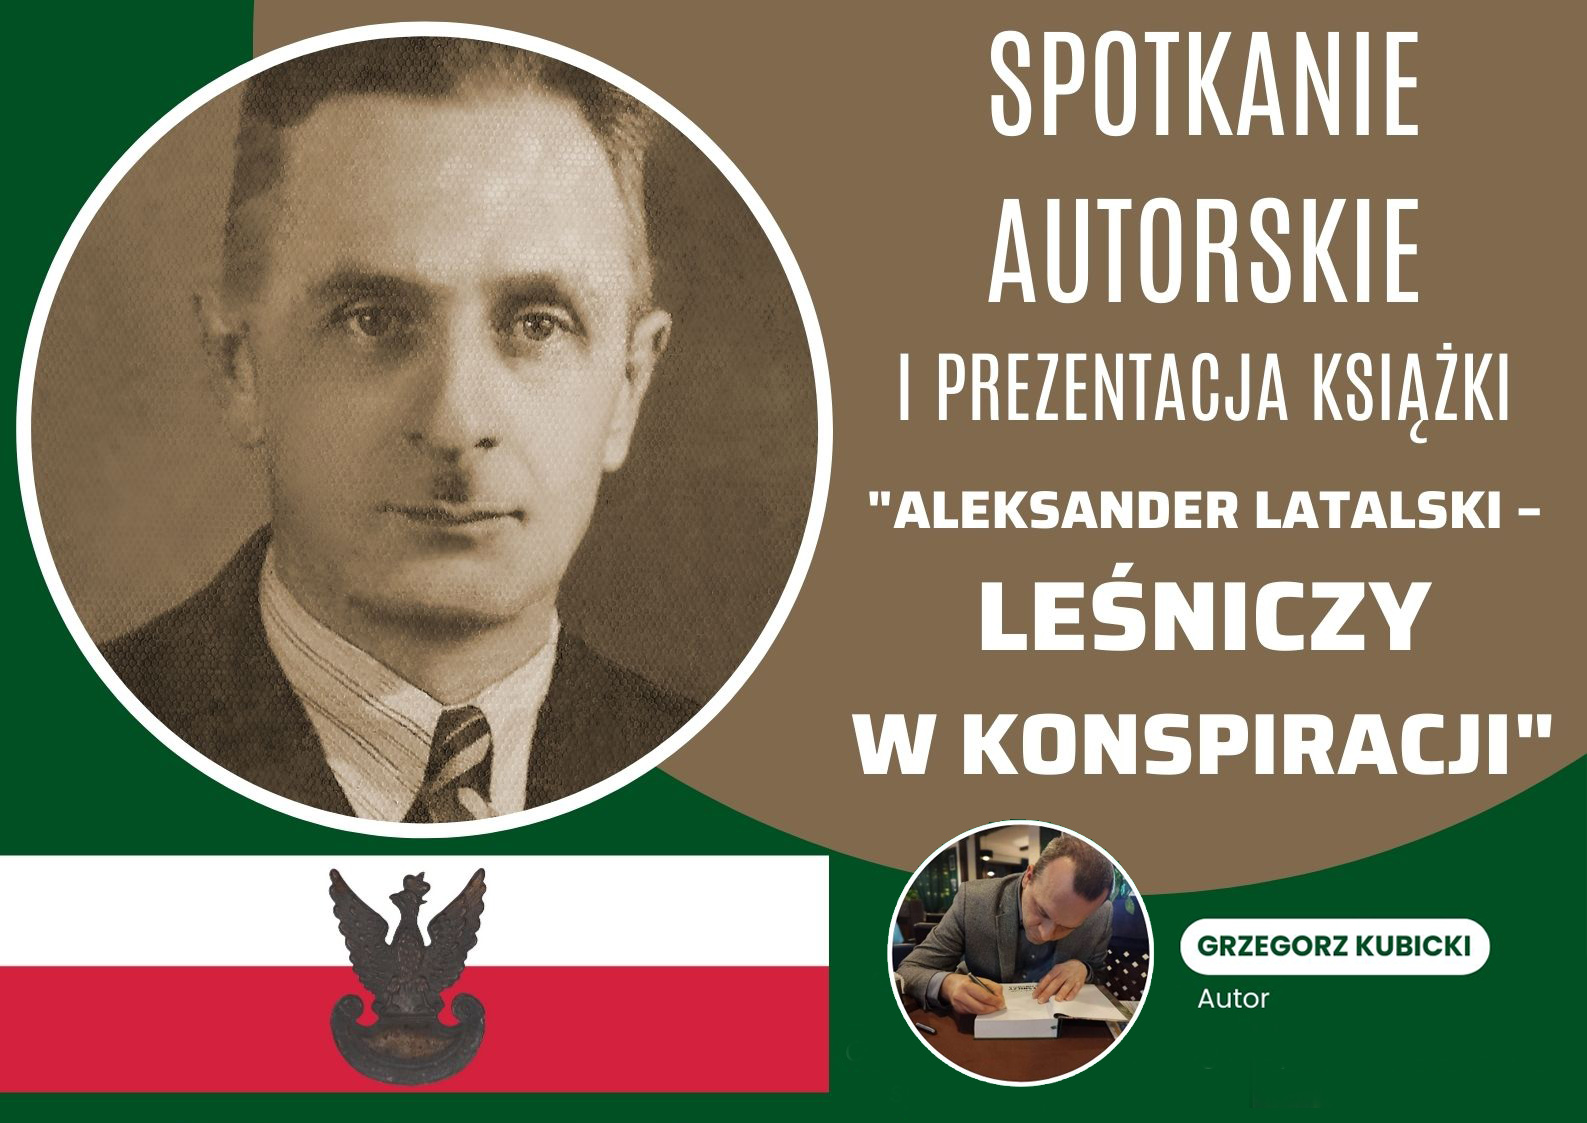 Plakat spotkania autorskiego i prezentacji książki - "Aleksander Latalski - leśniczy w konspiracji".